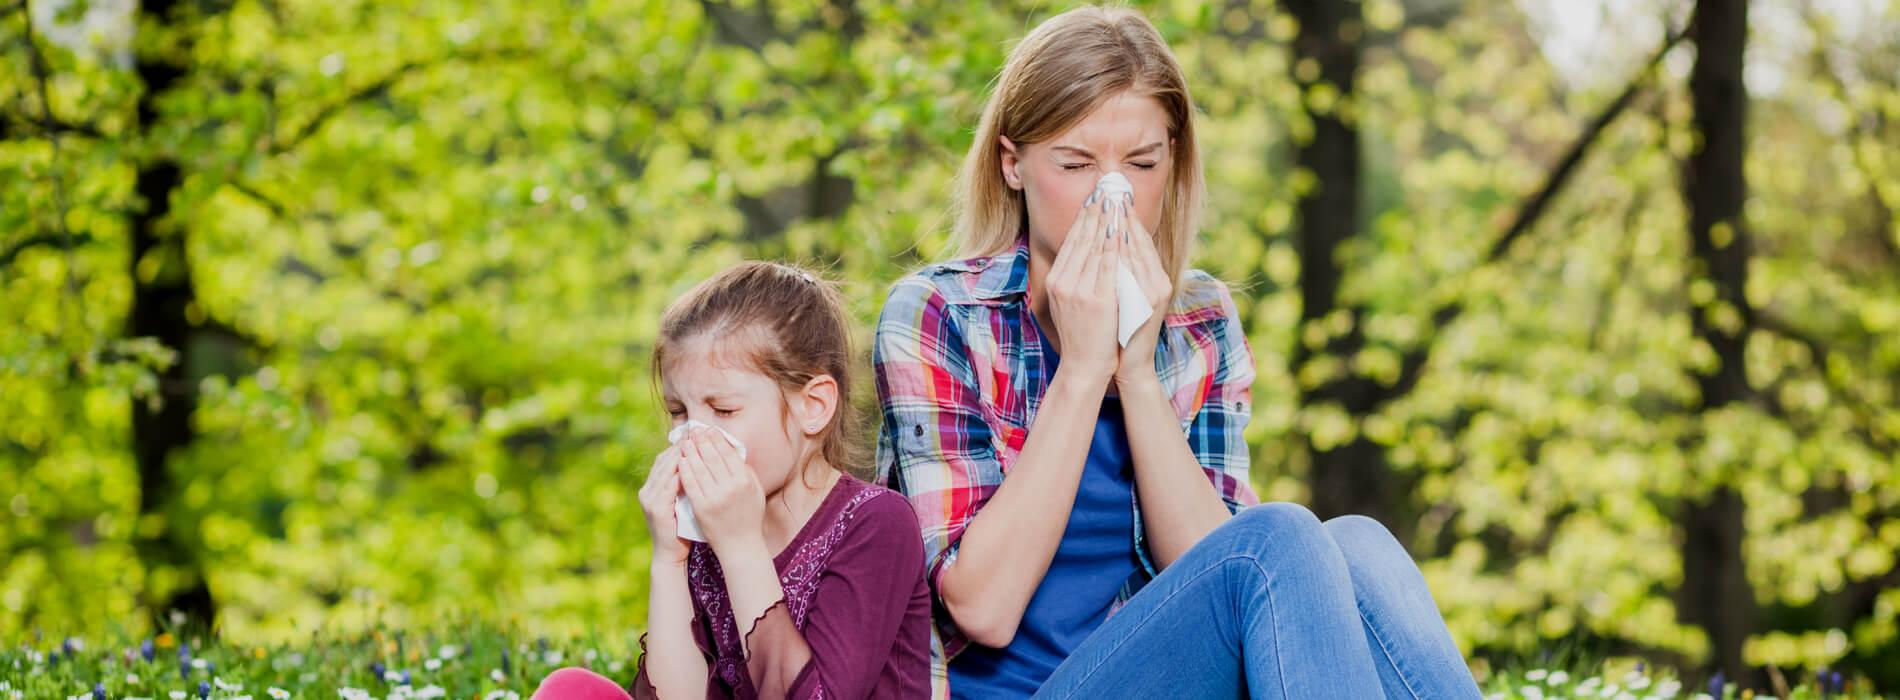  Kiedy najlepiej wykonać testy alergiczne?